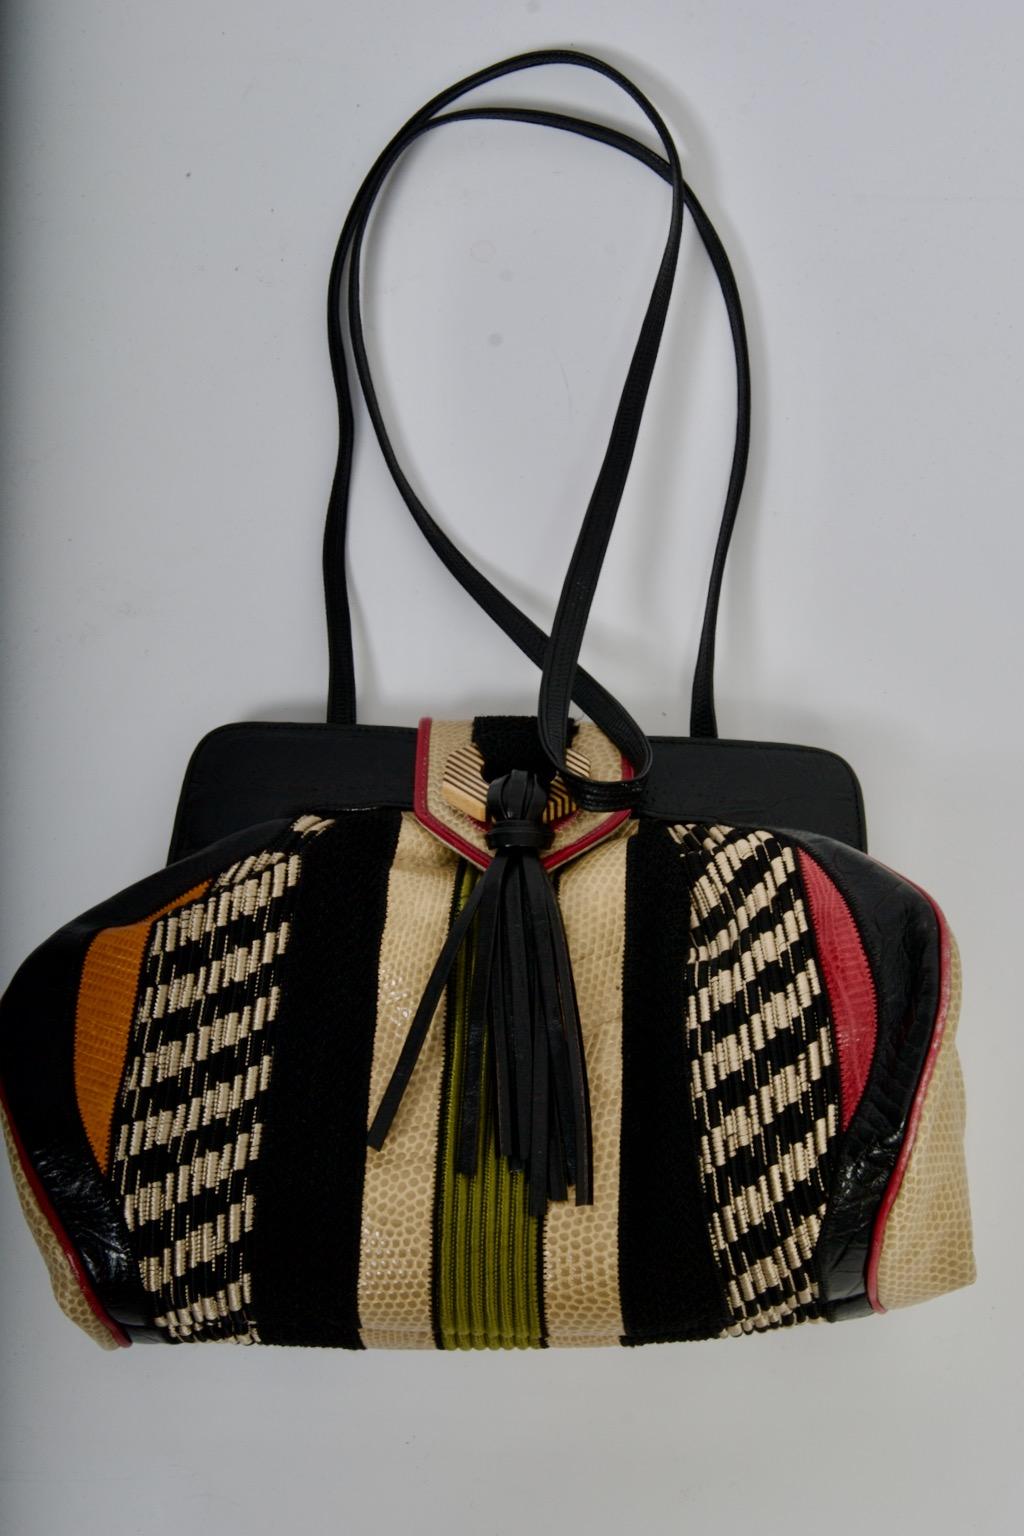 Les sacs à main Sharif se caractérisaient par leurs motifs en patchwork de cuir. Cette pochette/épaule convertible est un bon exemple du travail qui a rendu leurs sacs si populaires. Il est composé de cuir et de textures de différentes couleurs,